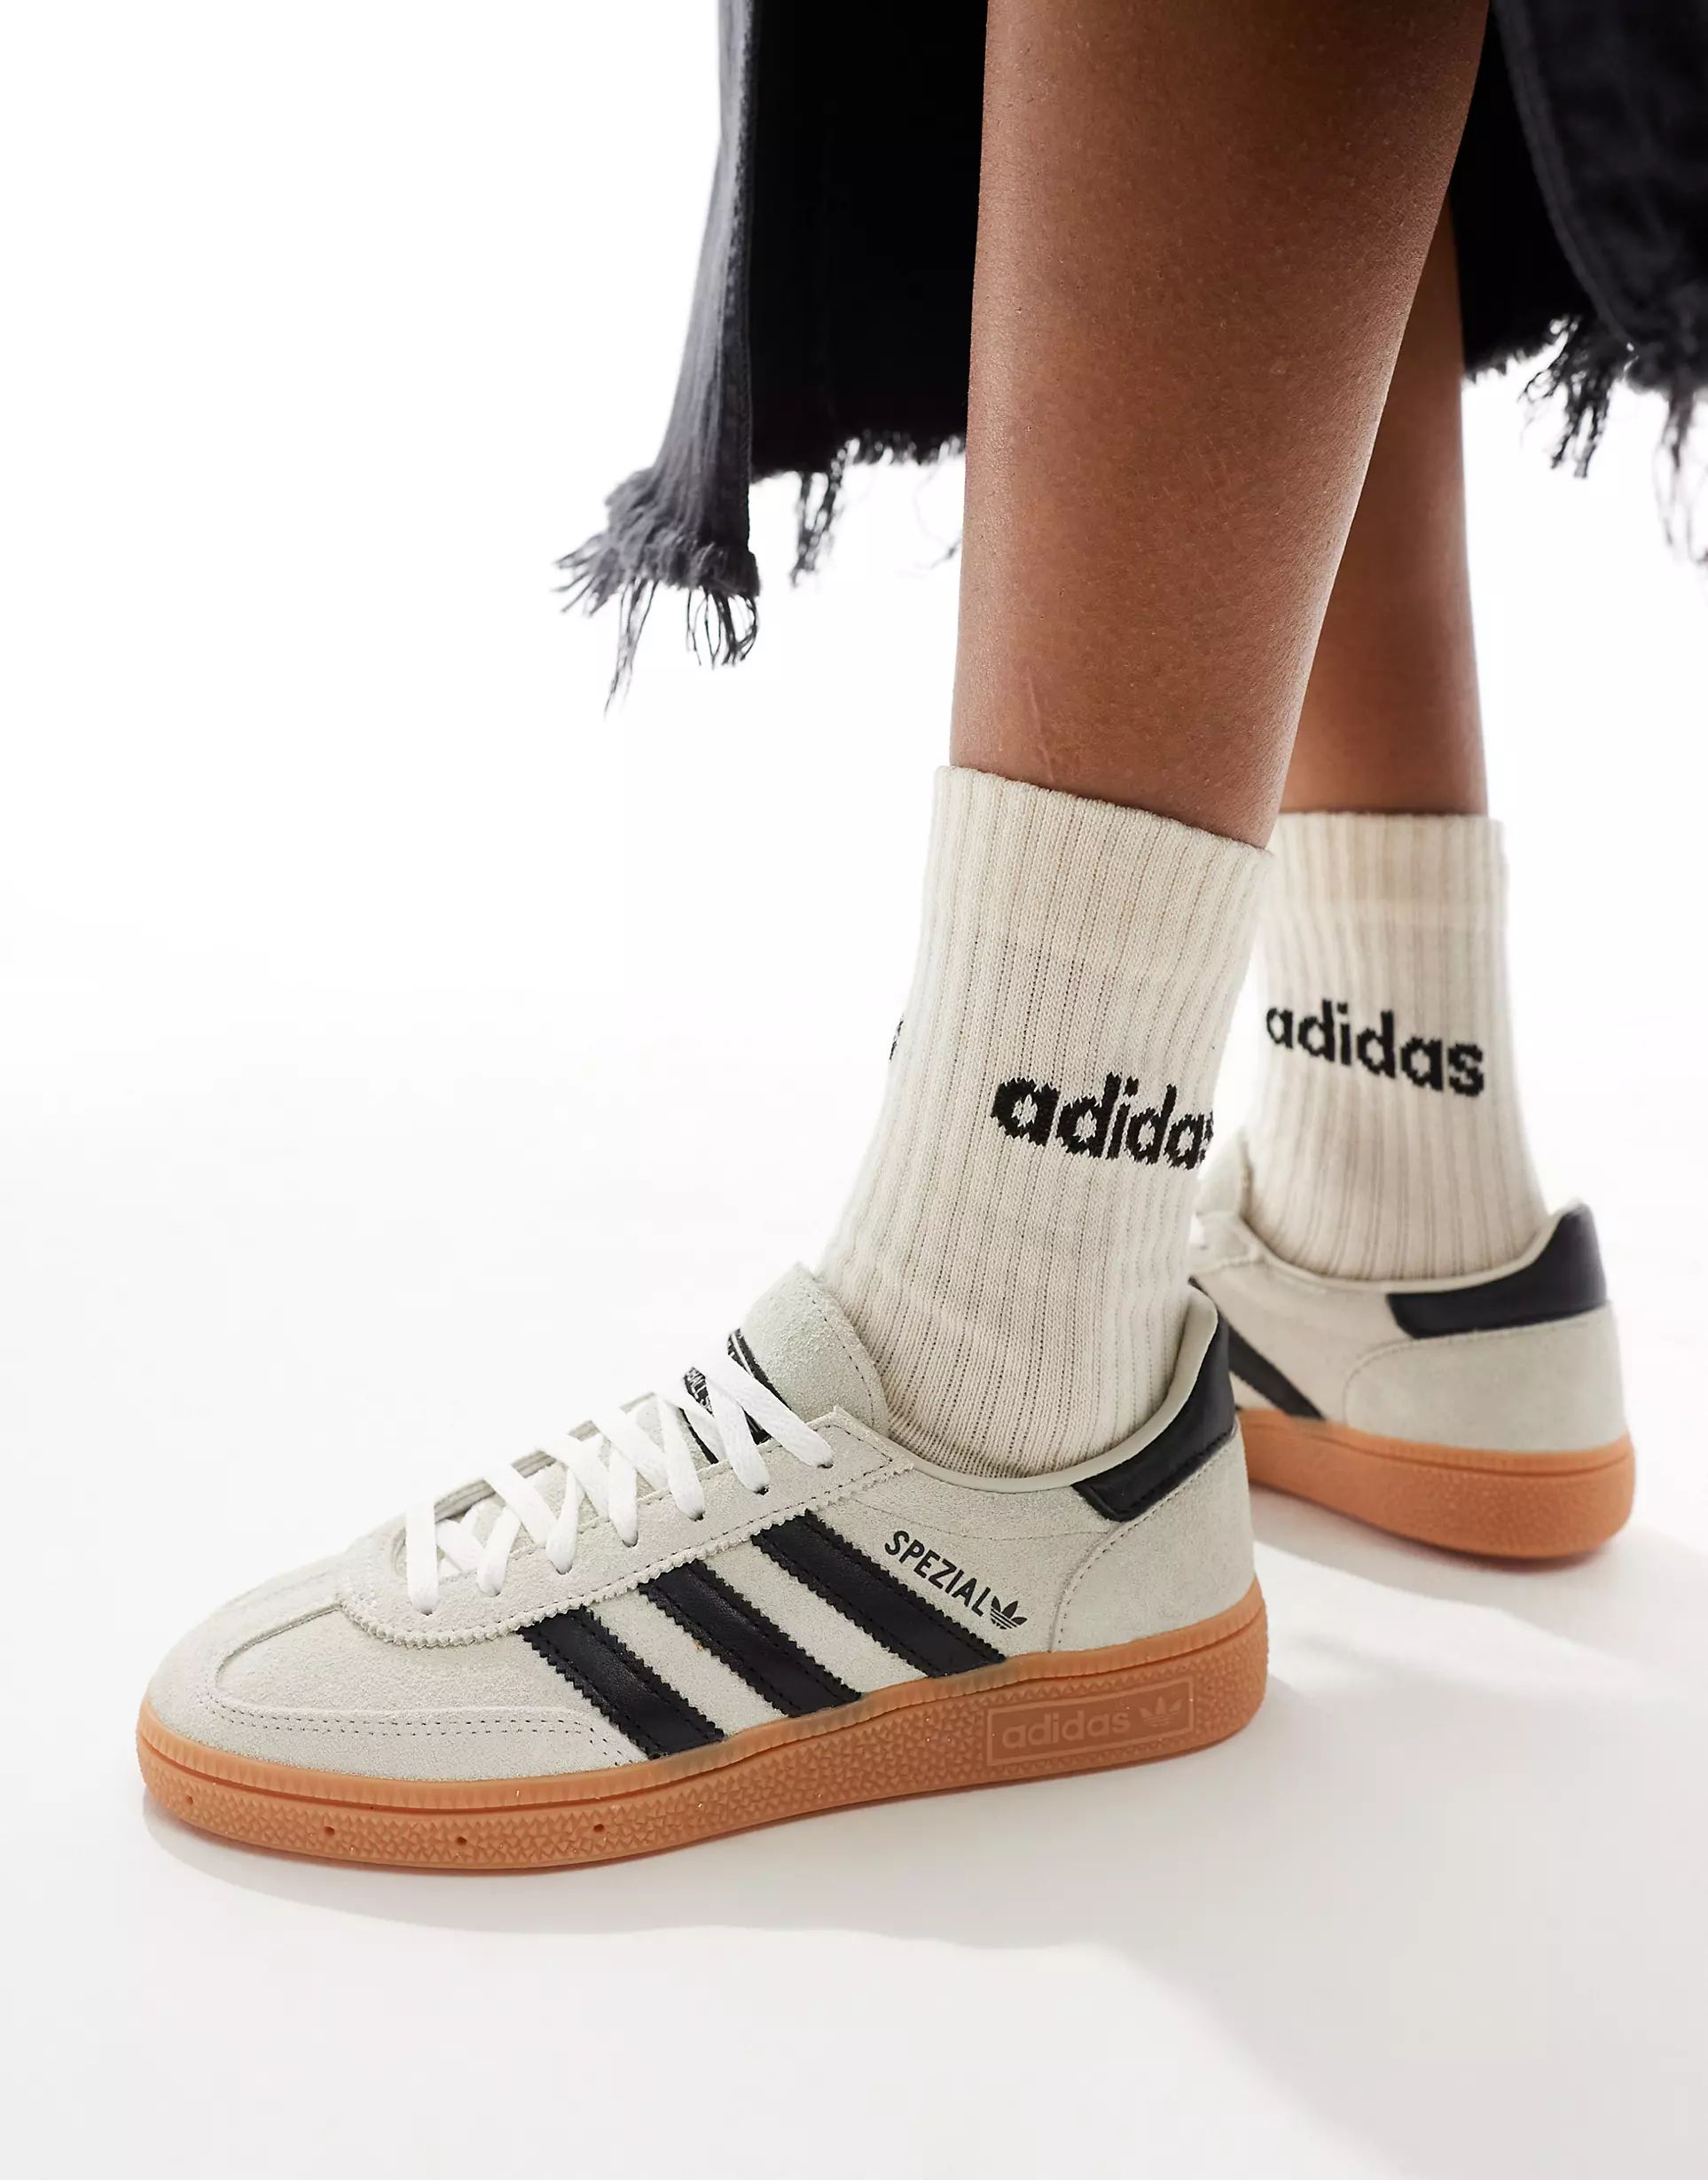 adidas Originals Handball Spezial gum sole trainers in cream and black | ASOS (Global)